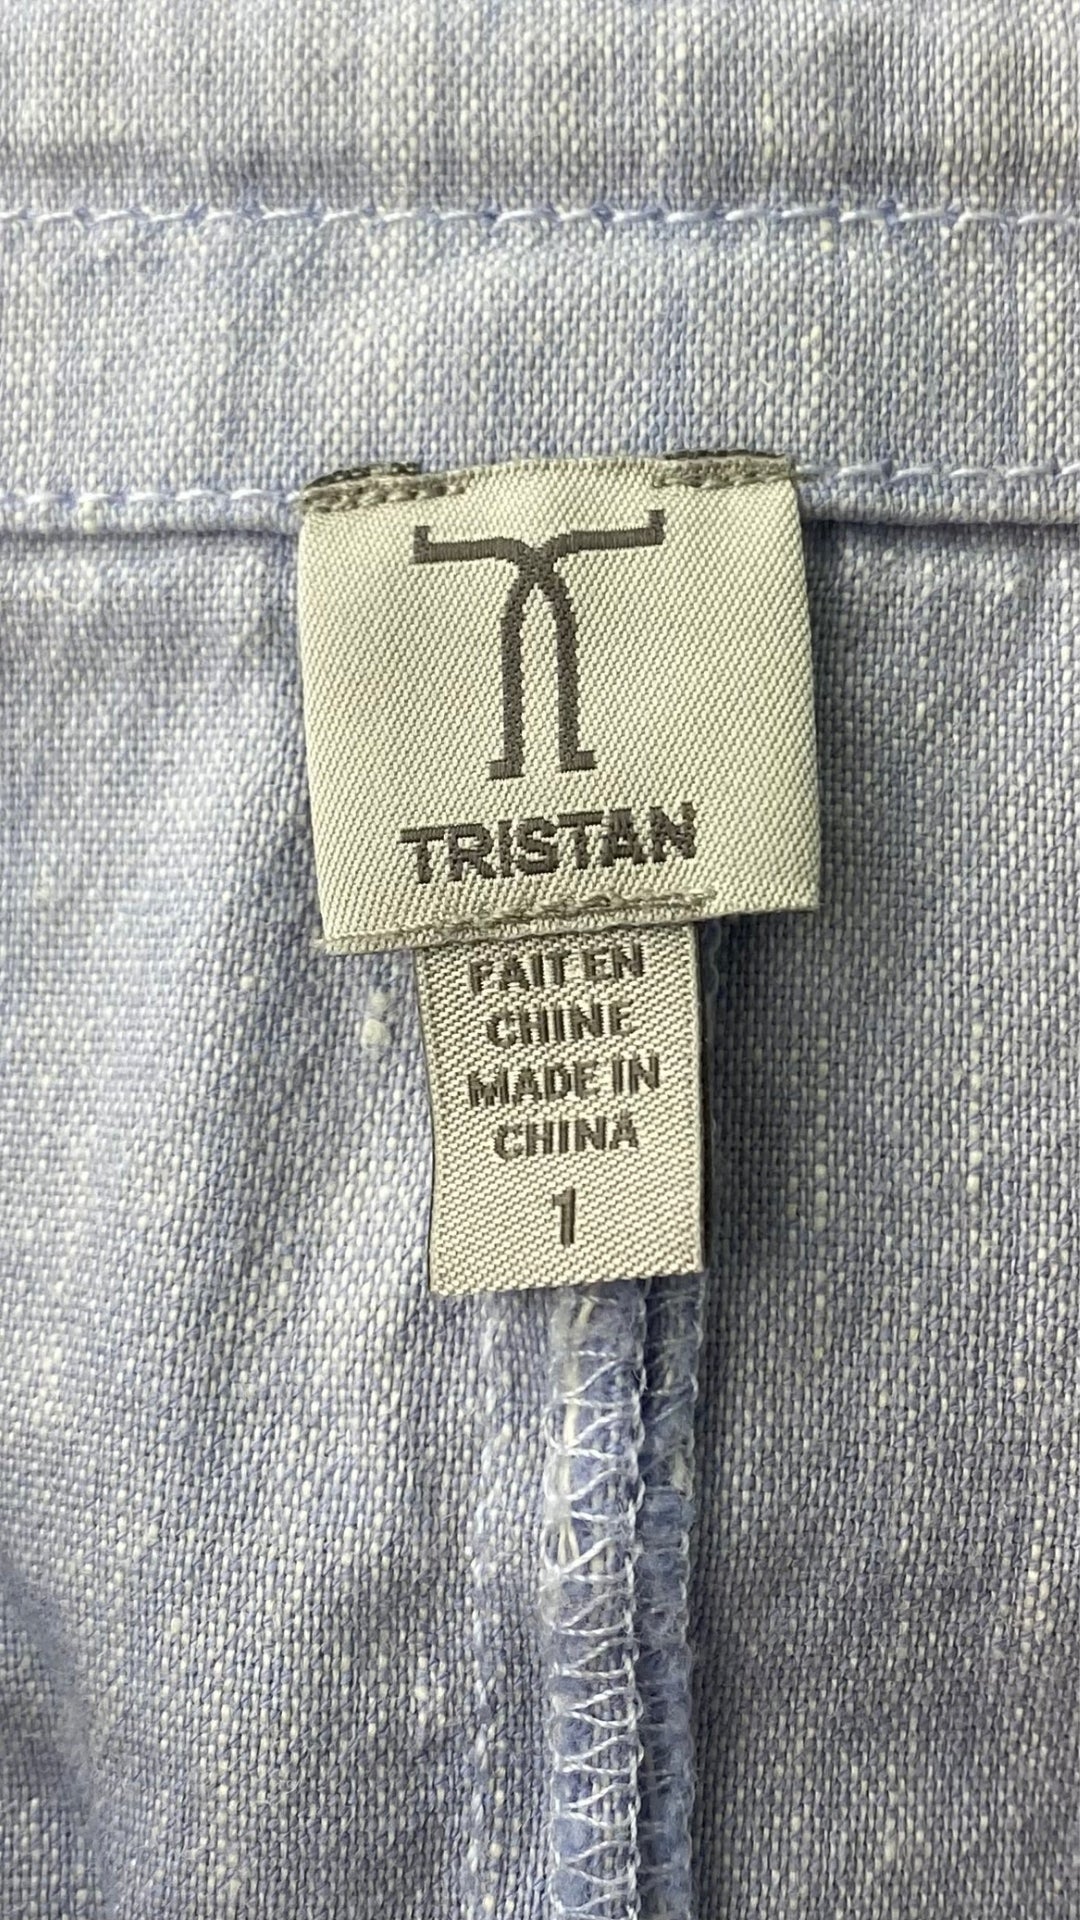 Jupe bleu doux en mélange lin et coton à fermeture éclair avant, Tristan, taille 1 (small). Vue de l'étiquette de marque et taille.